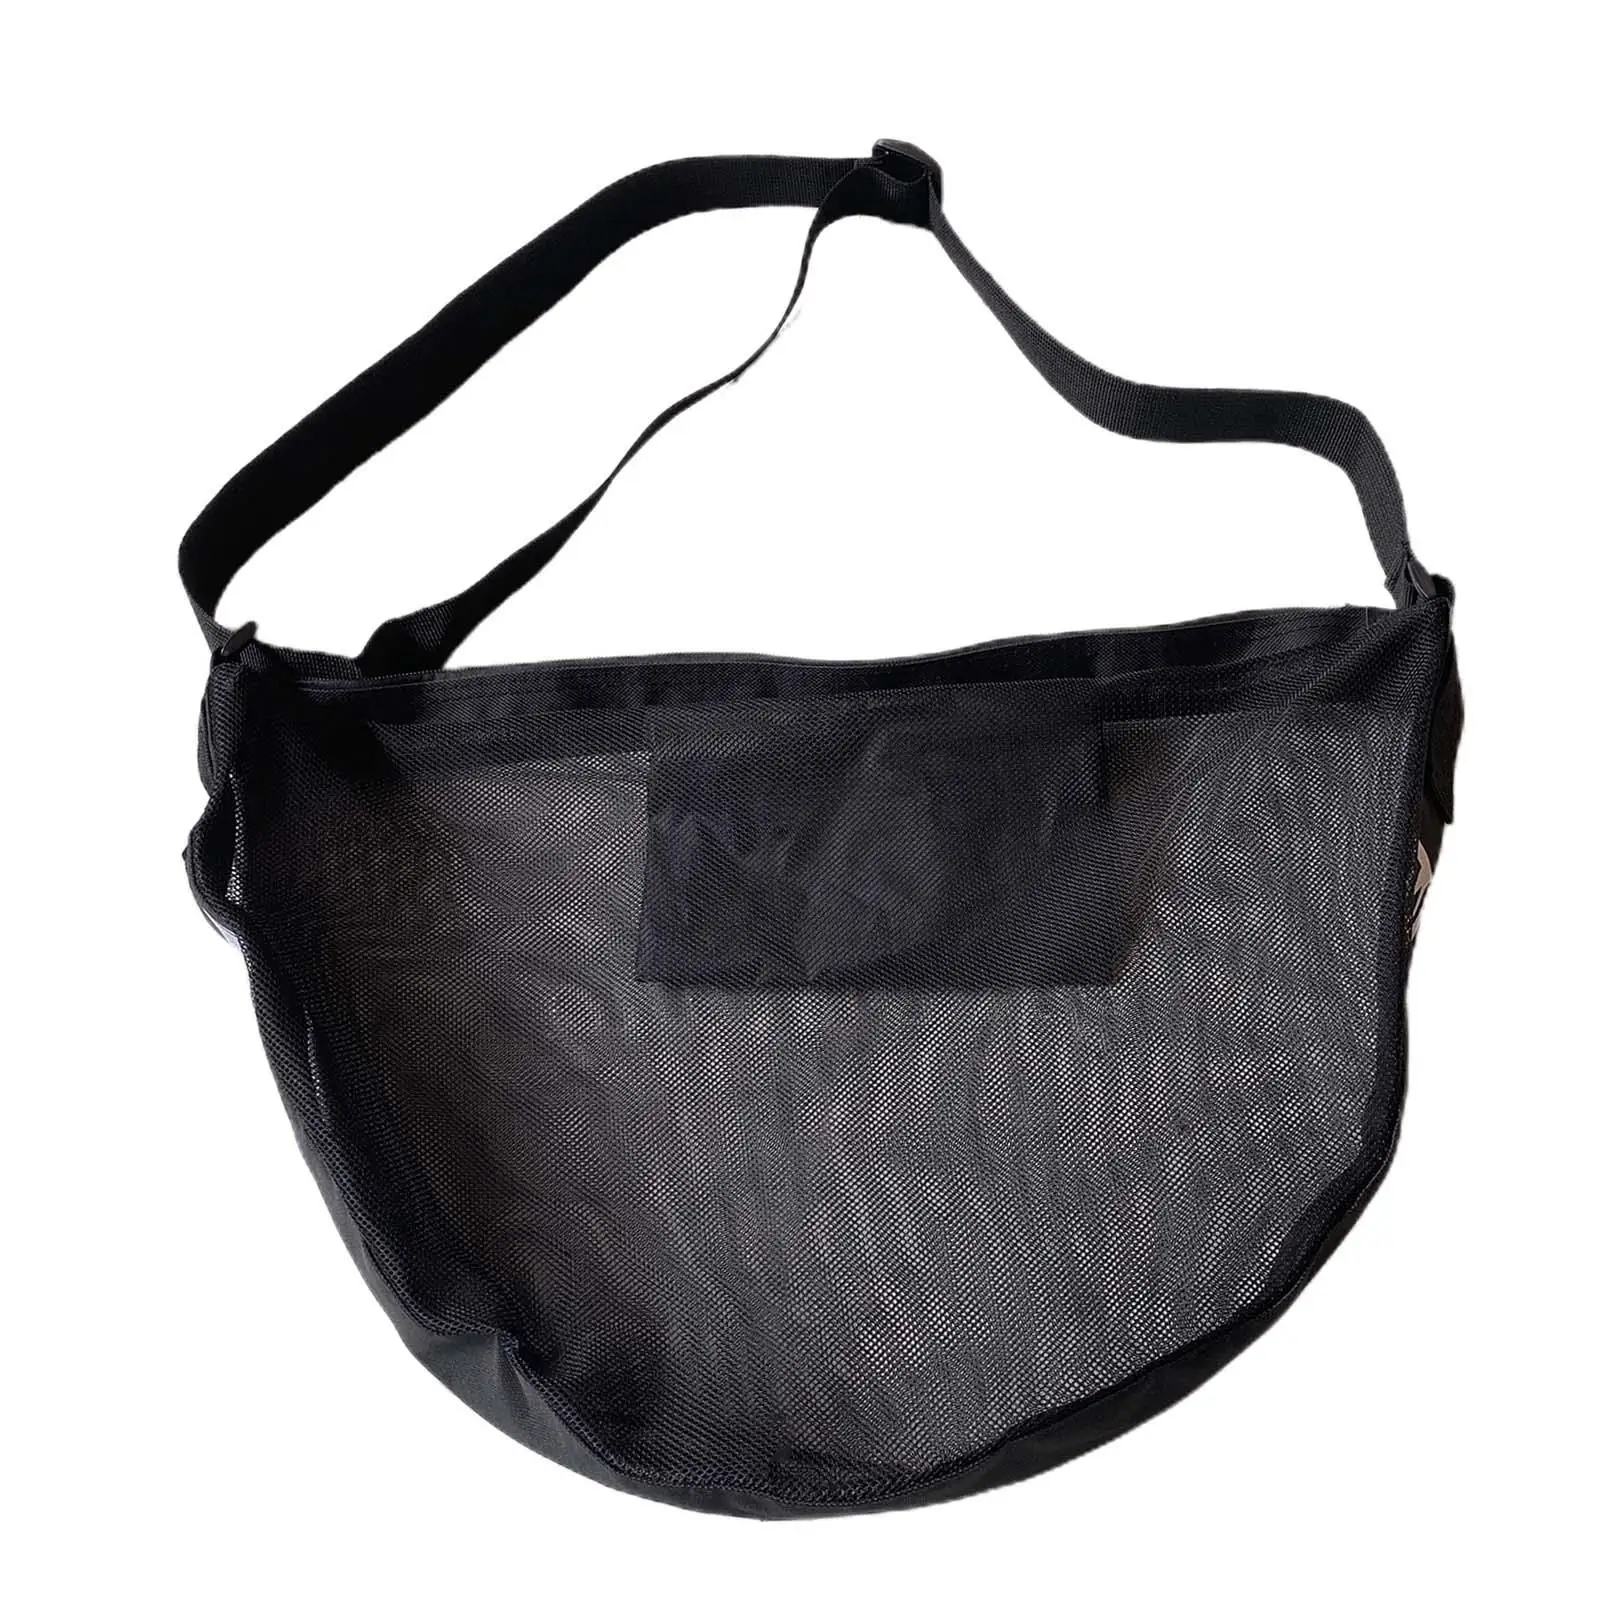 Basketball Carry Bag Storage Lightweight Ball Holder Organizer Ball Bags Mesh for Women Men Training Garage Volleyball Soccer